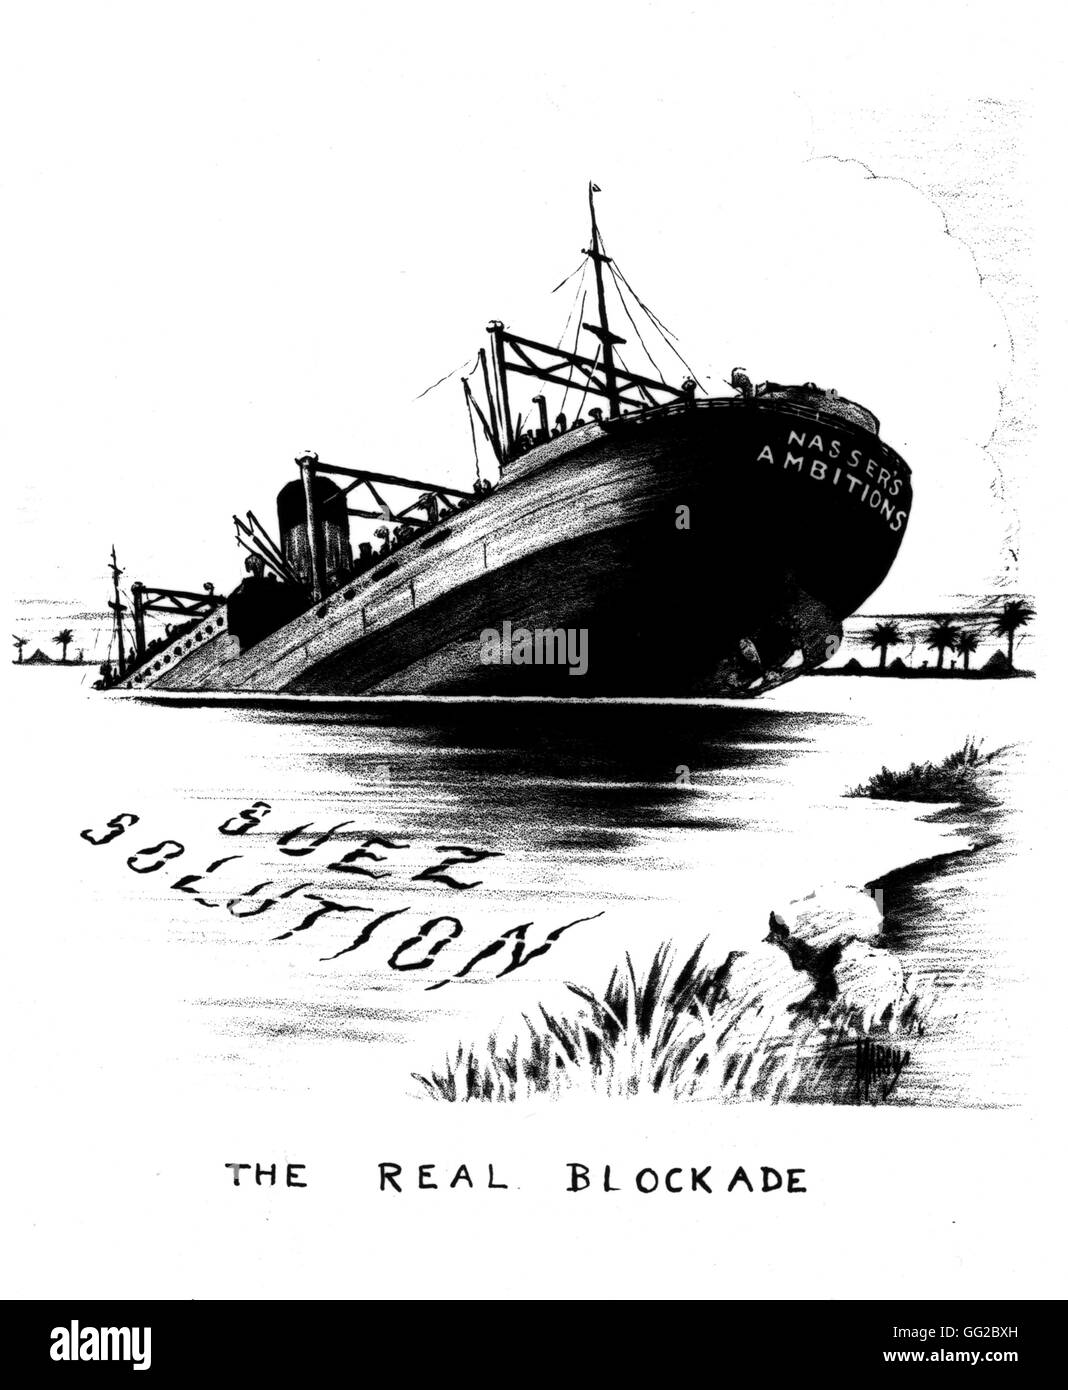 Karikatur über die Verstaatlichung des Suez-Kanals durch Oberst Nasser 1956 Ägypten - Suez-Affäre Washington - Library of Congress Stockfoto